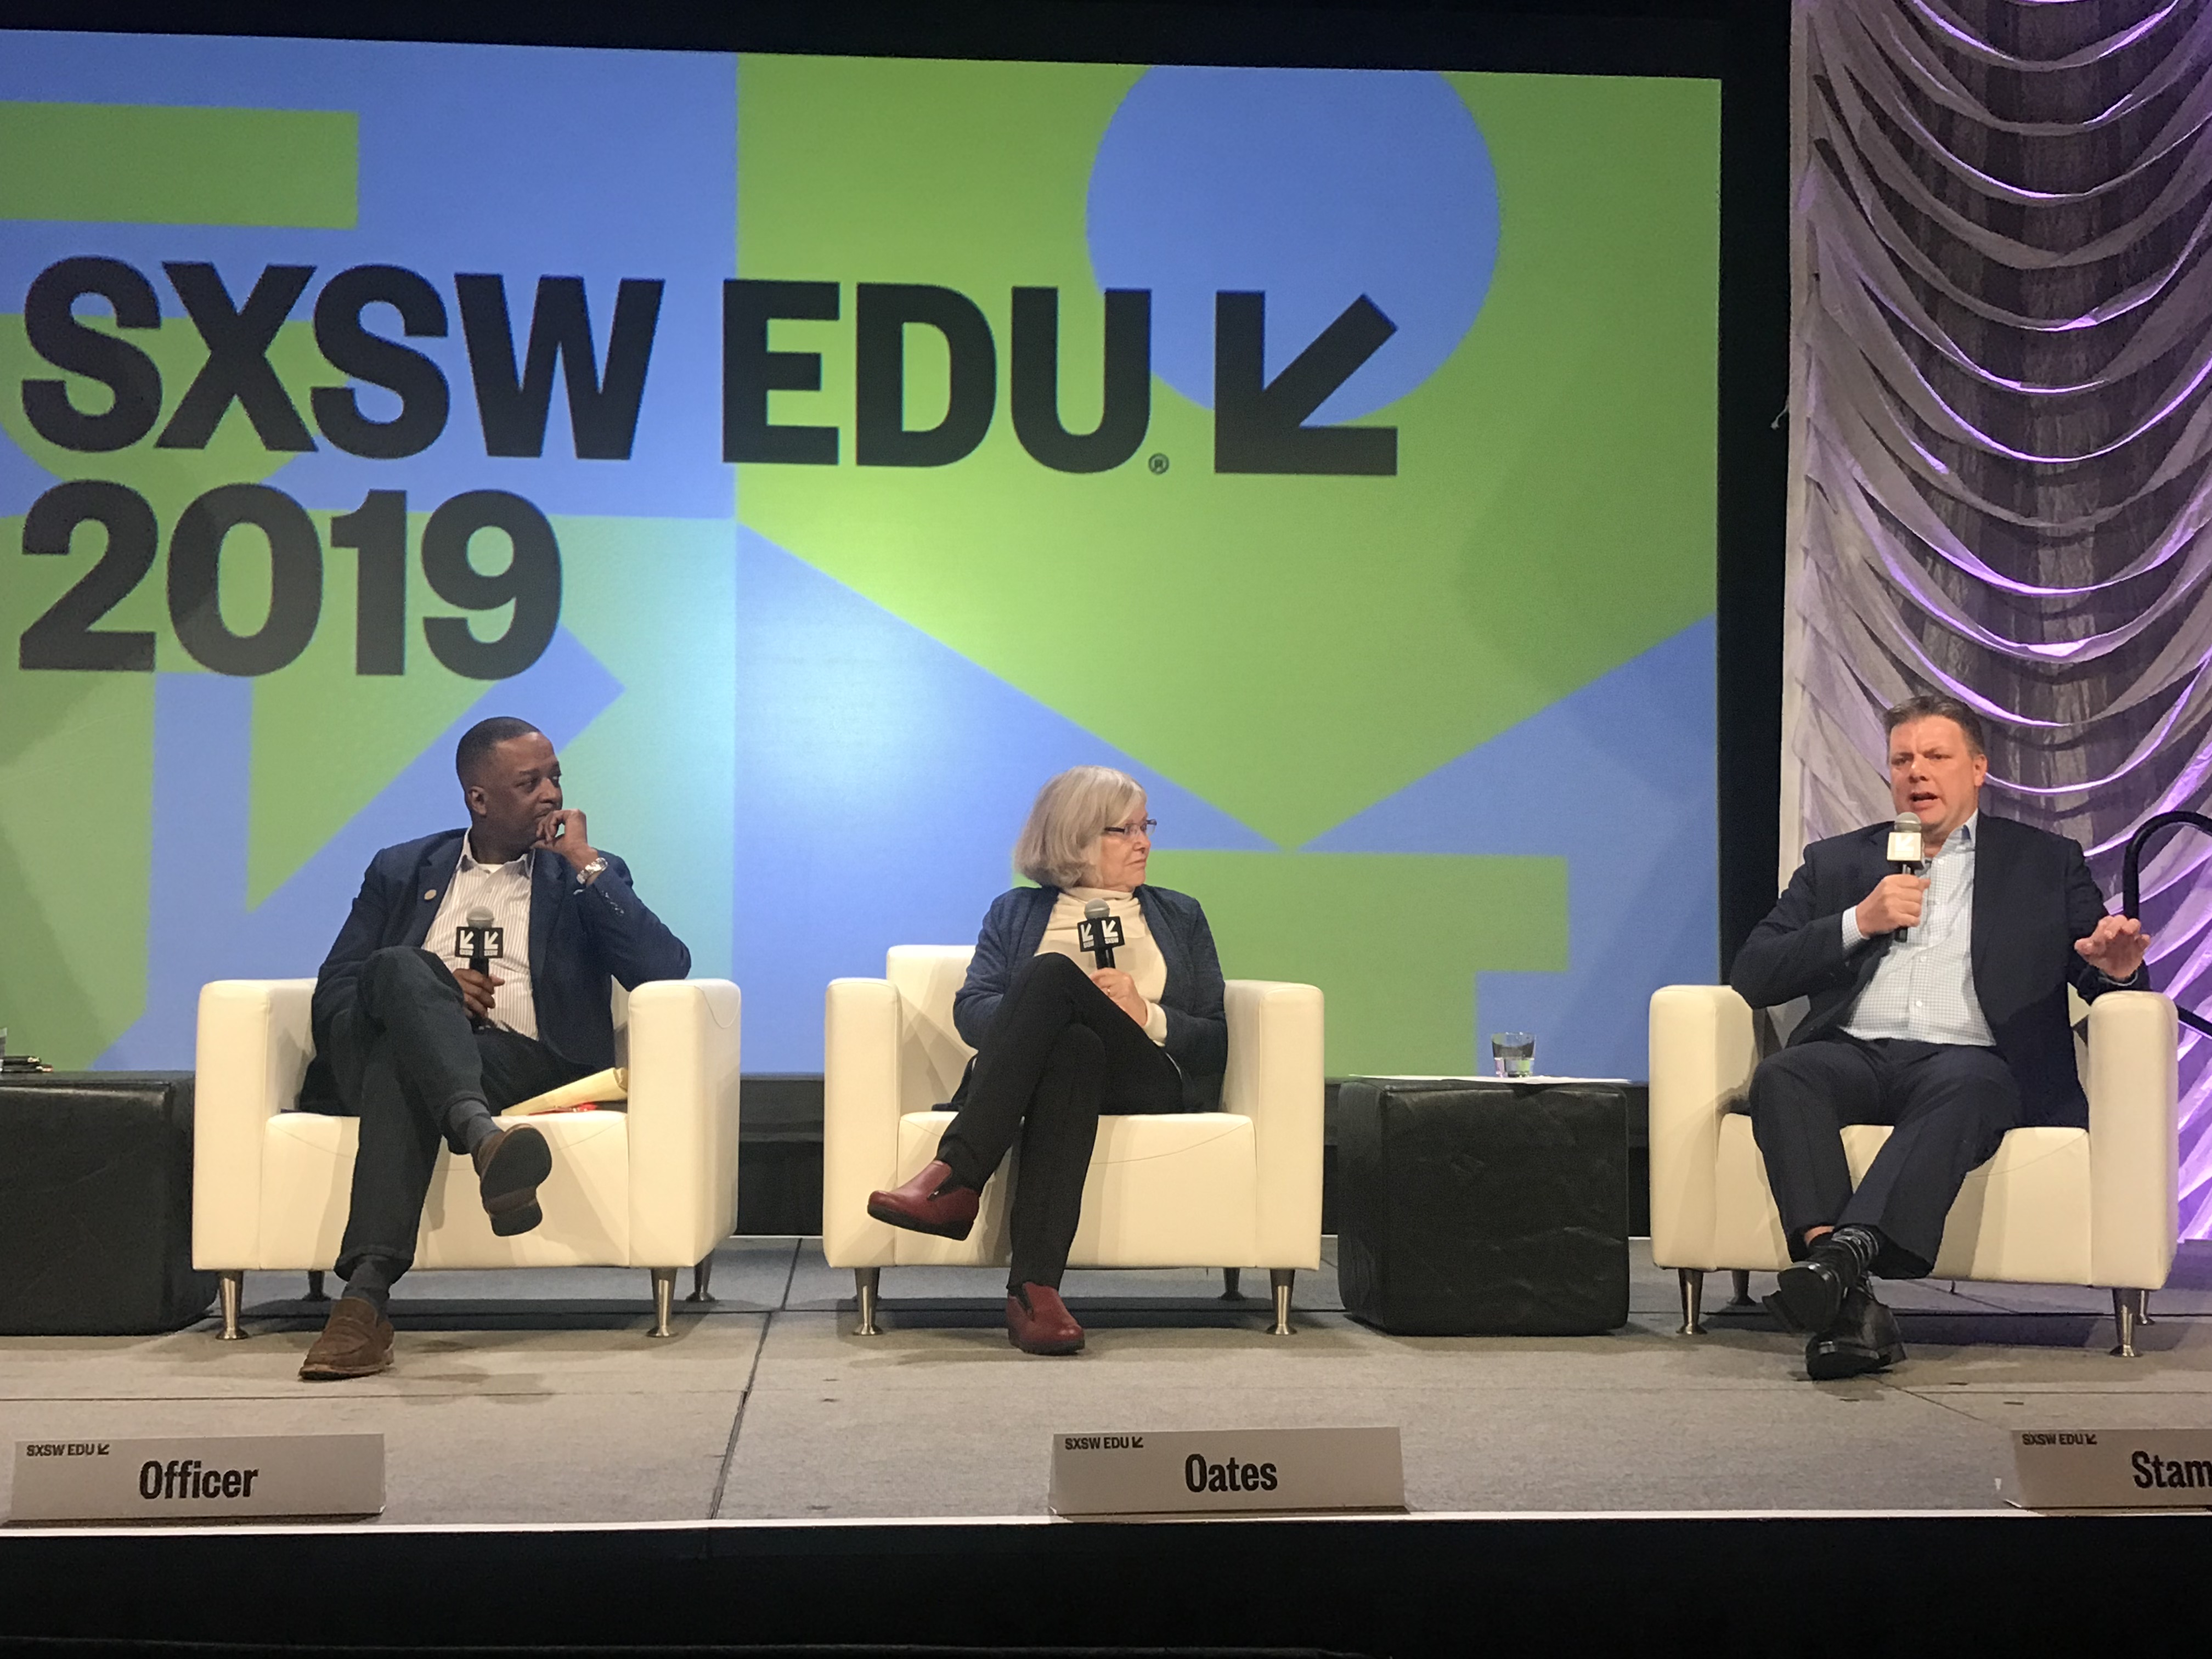 Rethinking Education as We Live & Work Longer panel at SXSW EDU.